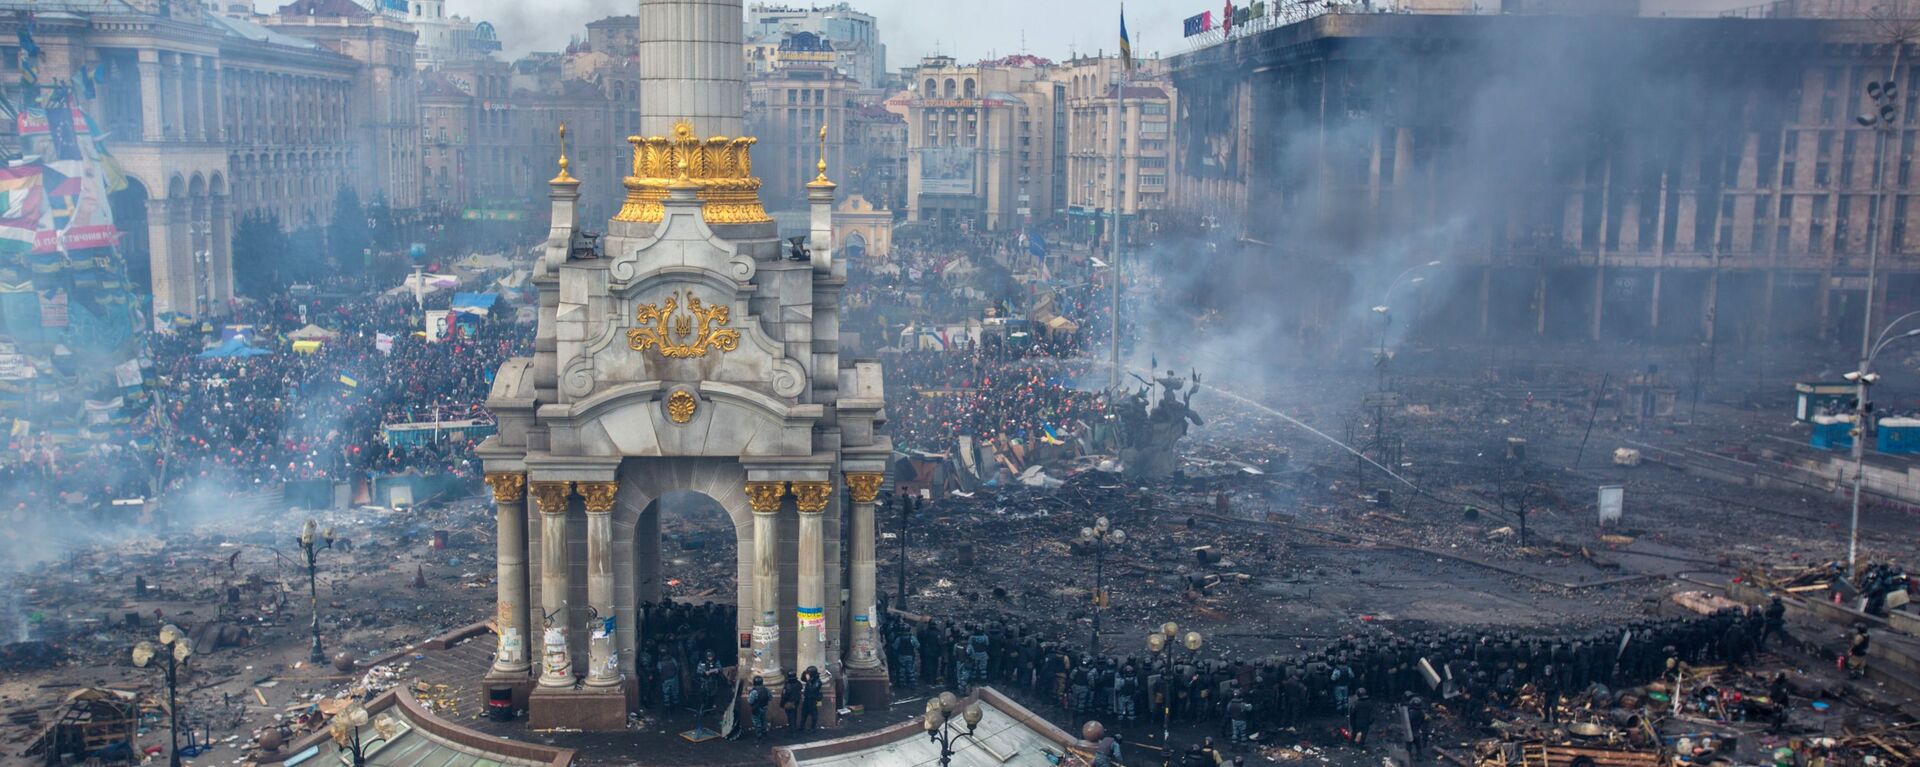 Demonstracije na Trgu nezavisnosti u Kijevu, februar 2014. godine - Sputnik Srbija, 1920, 20.09.2021